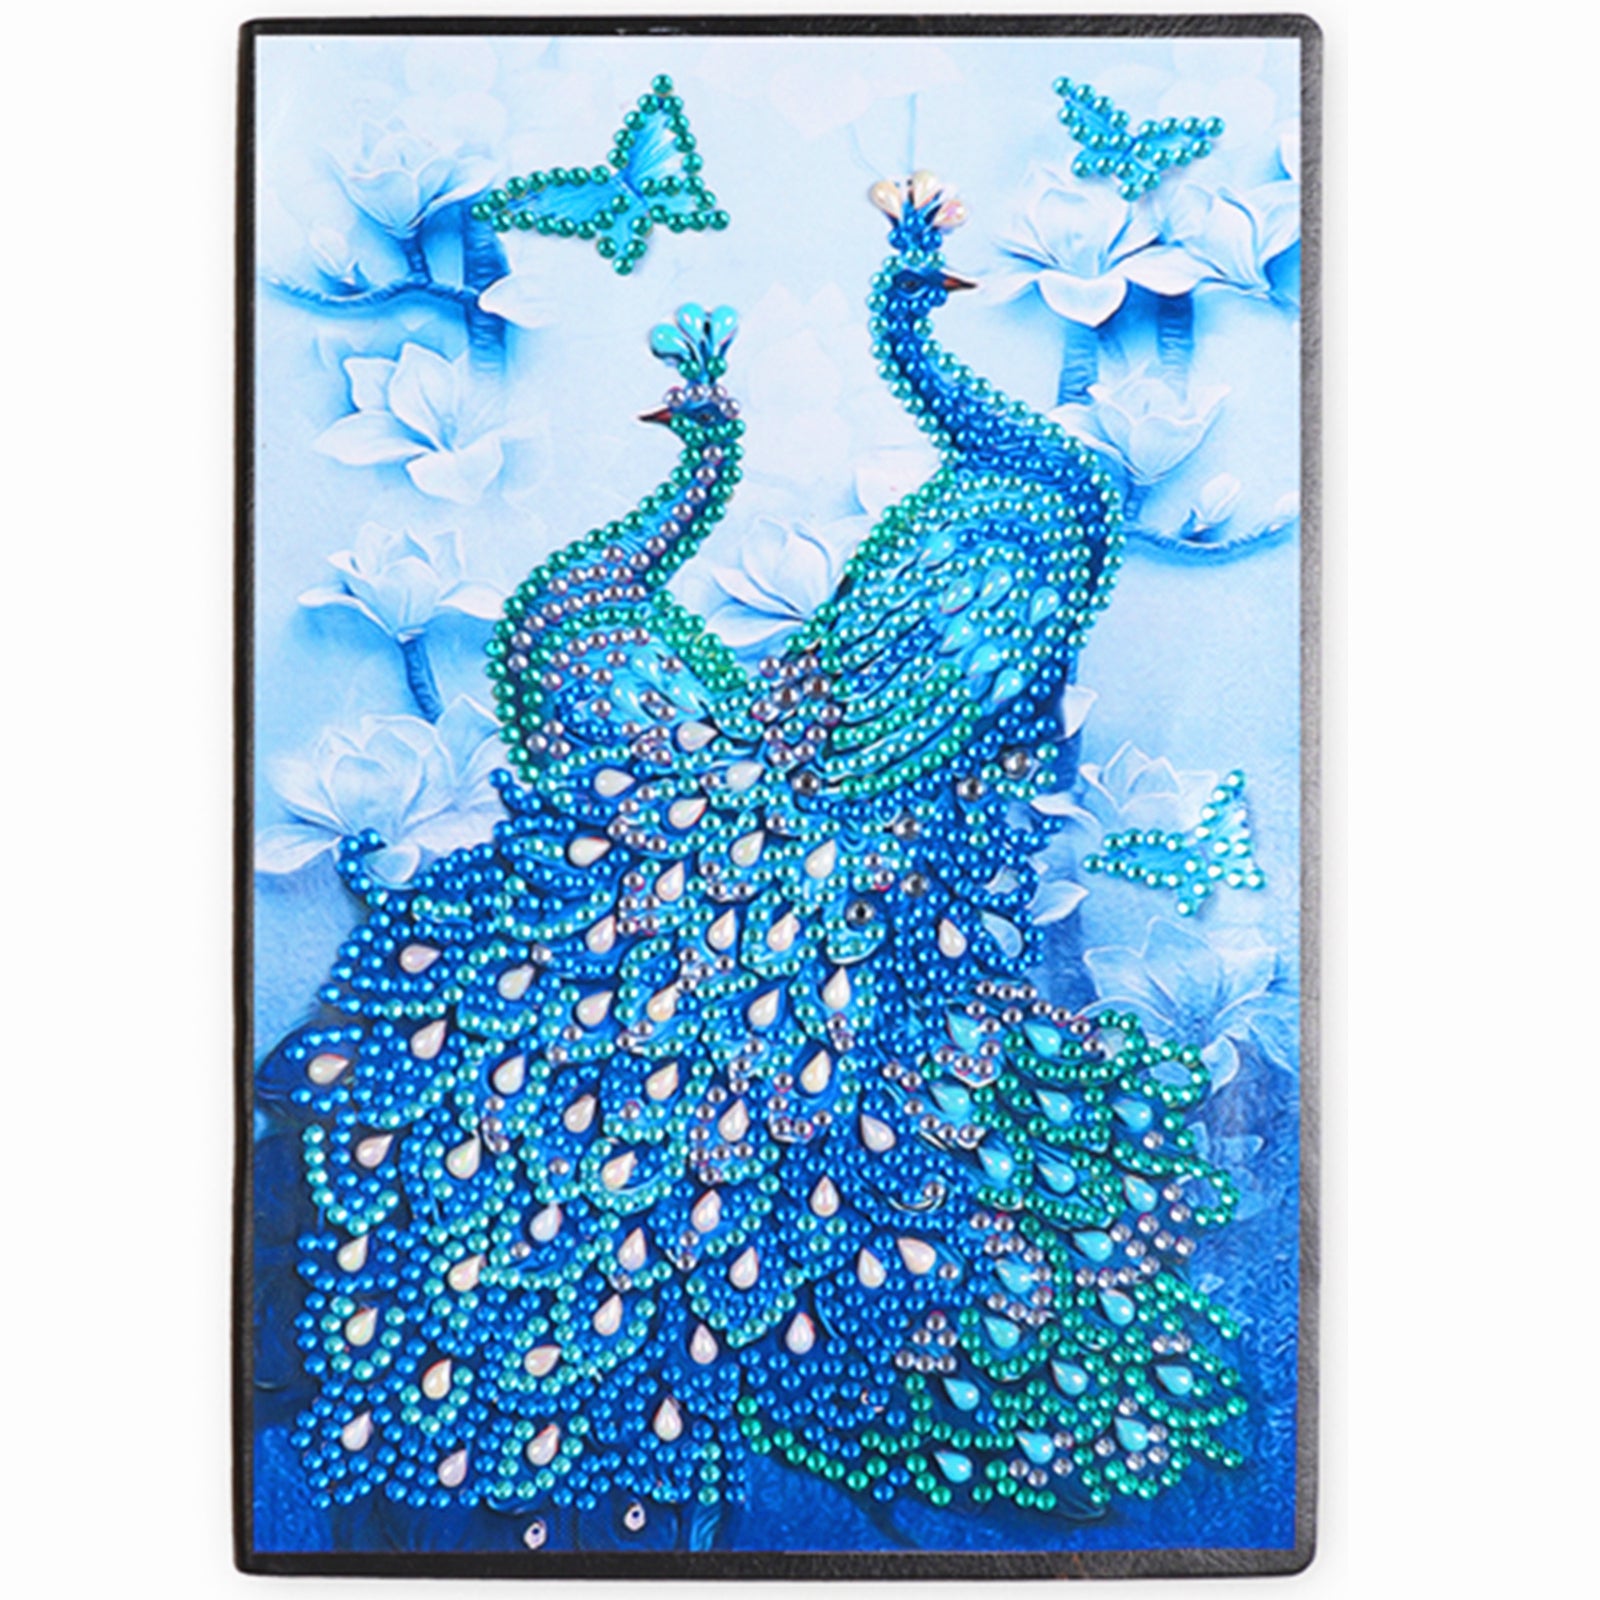 Full Large Diamond Painting kit - Beautiful peacock – Hibah